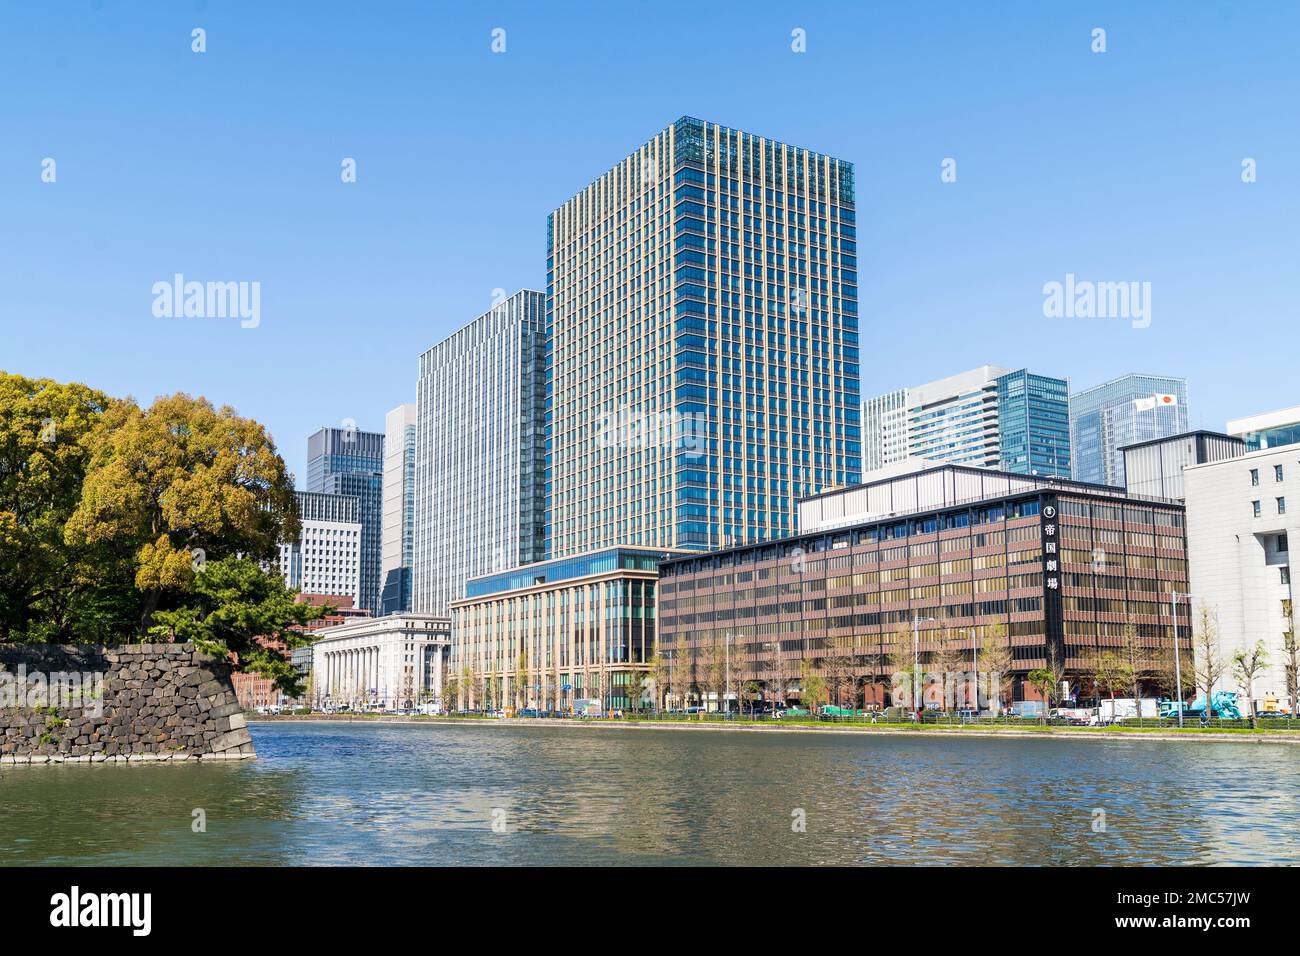 Fila de bloques de oficinas a lo largo del foso del Palacio Imperial, Tokio. El nuevo edificio internacional Marunouchi y el edificio Shin Tokyo y otros. Foto de stock